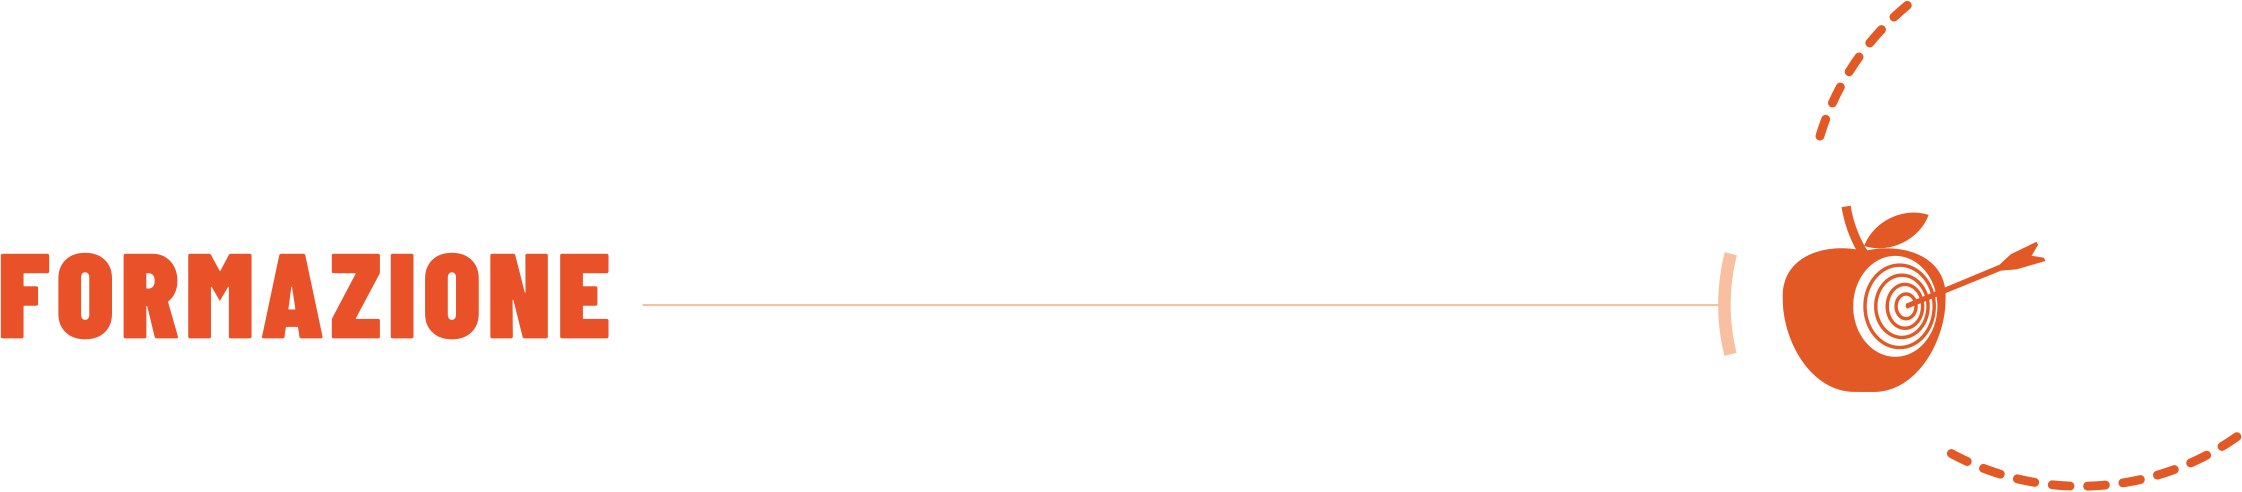 logo Formazione - Consulenza aziendale